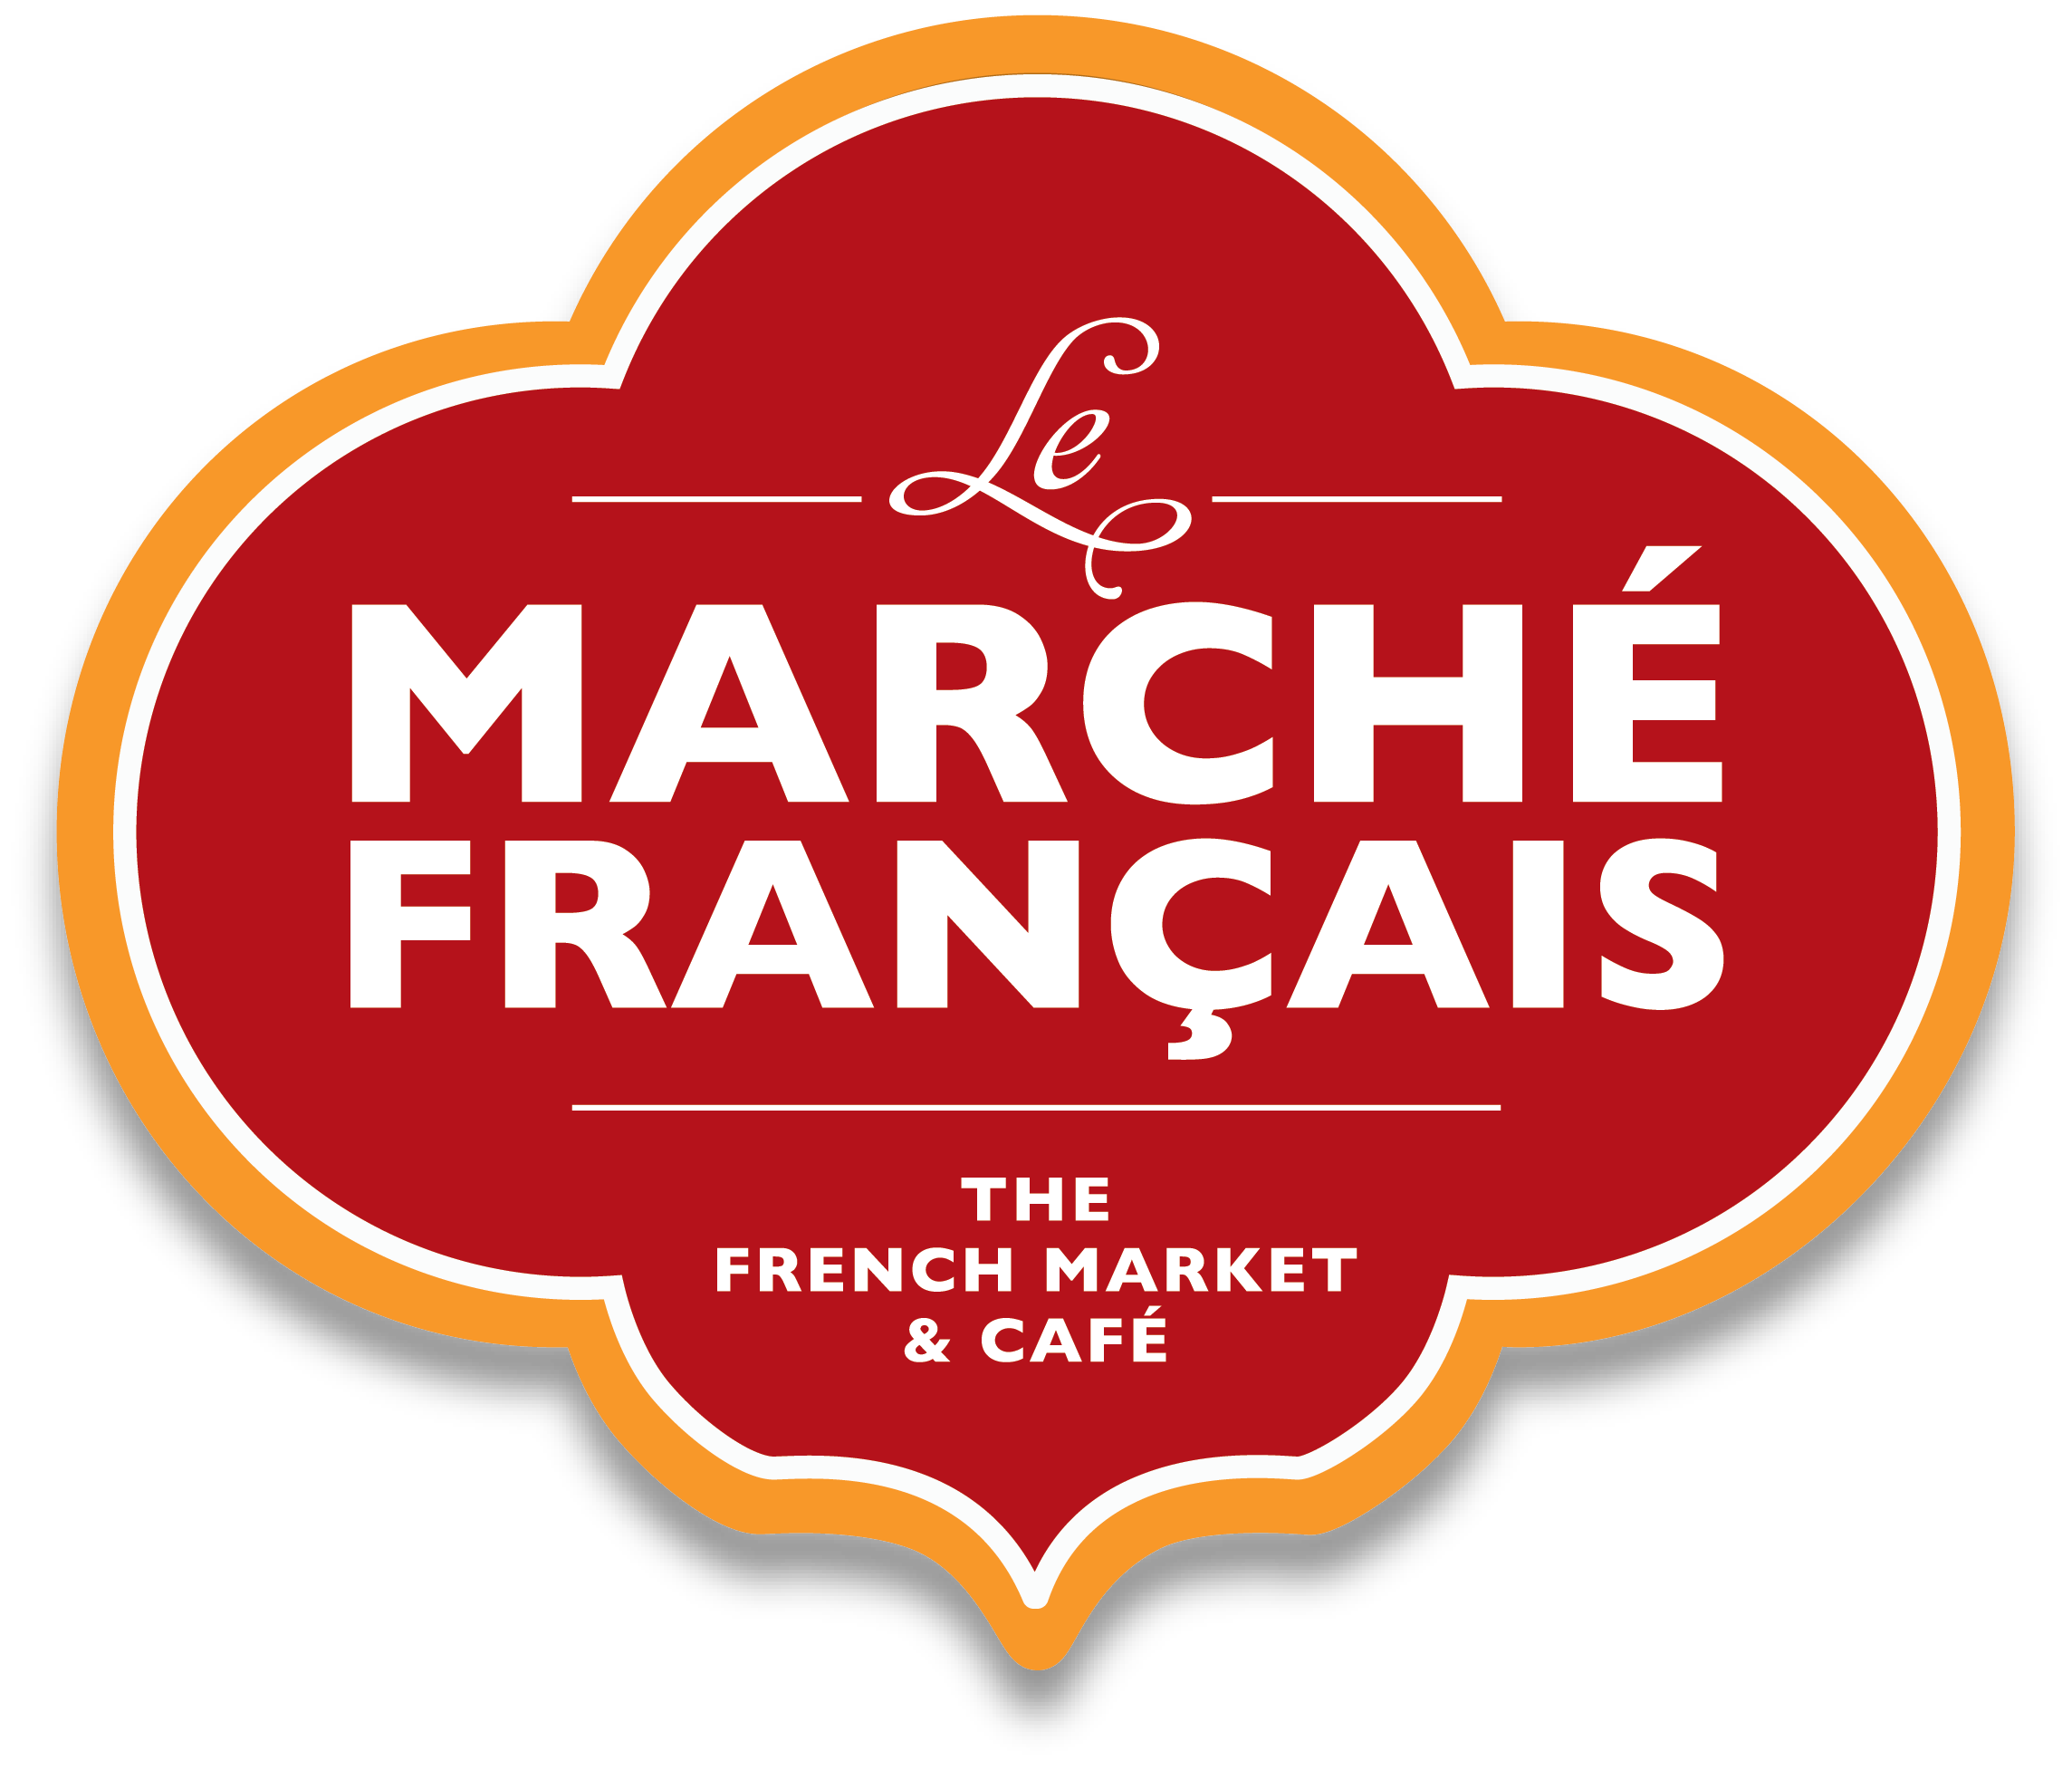 Le Marché Francais